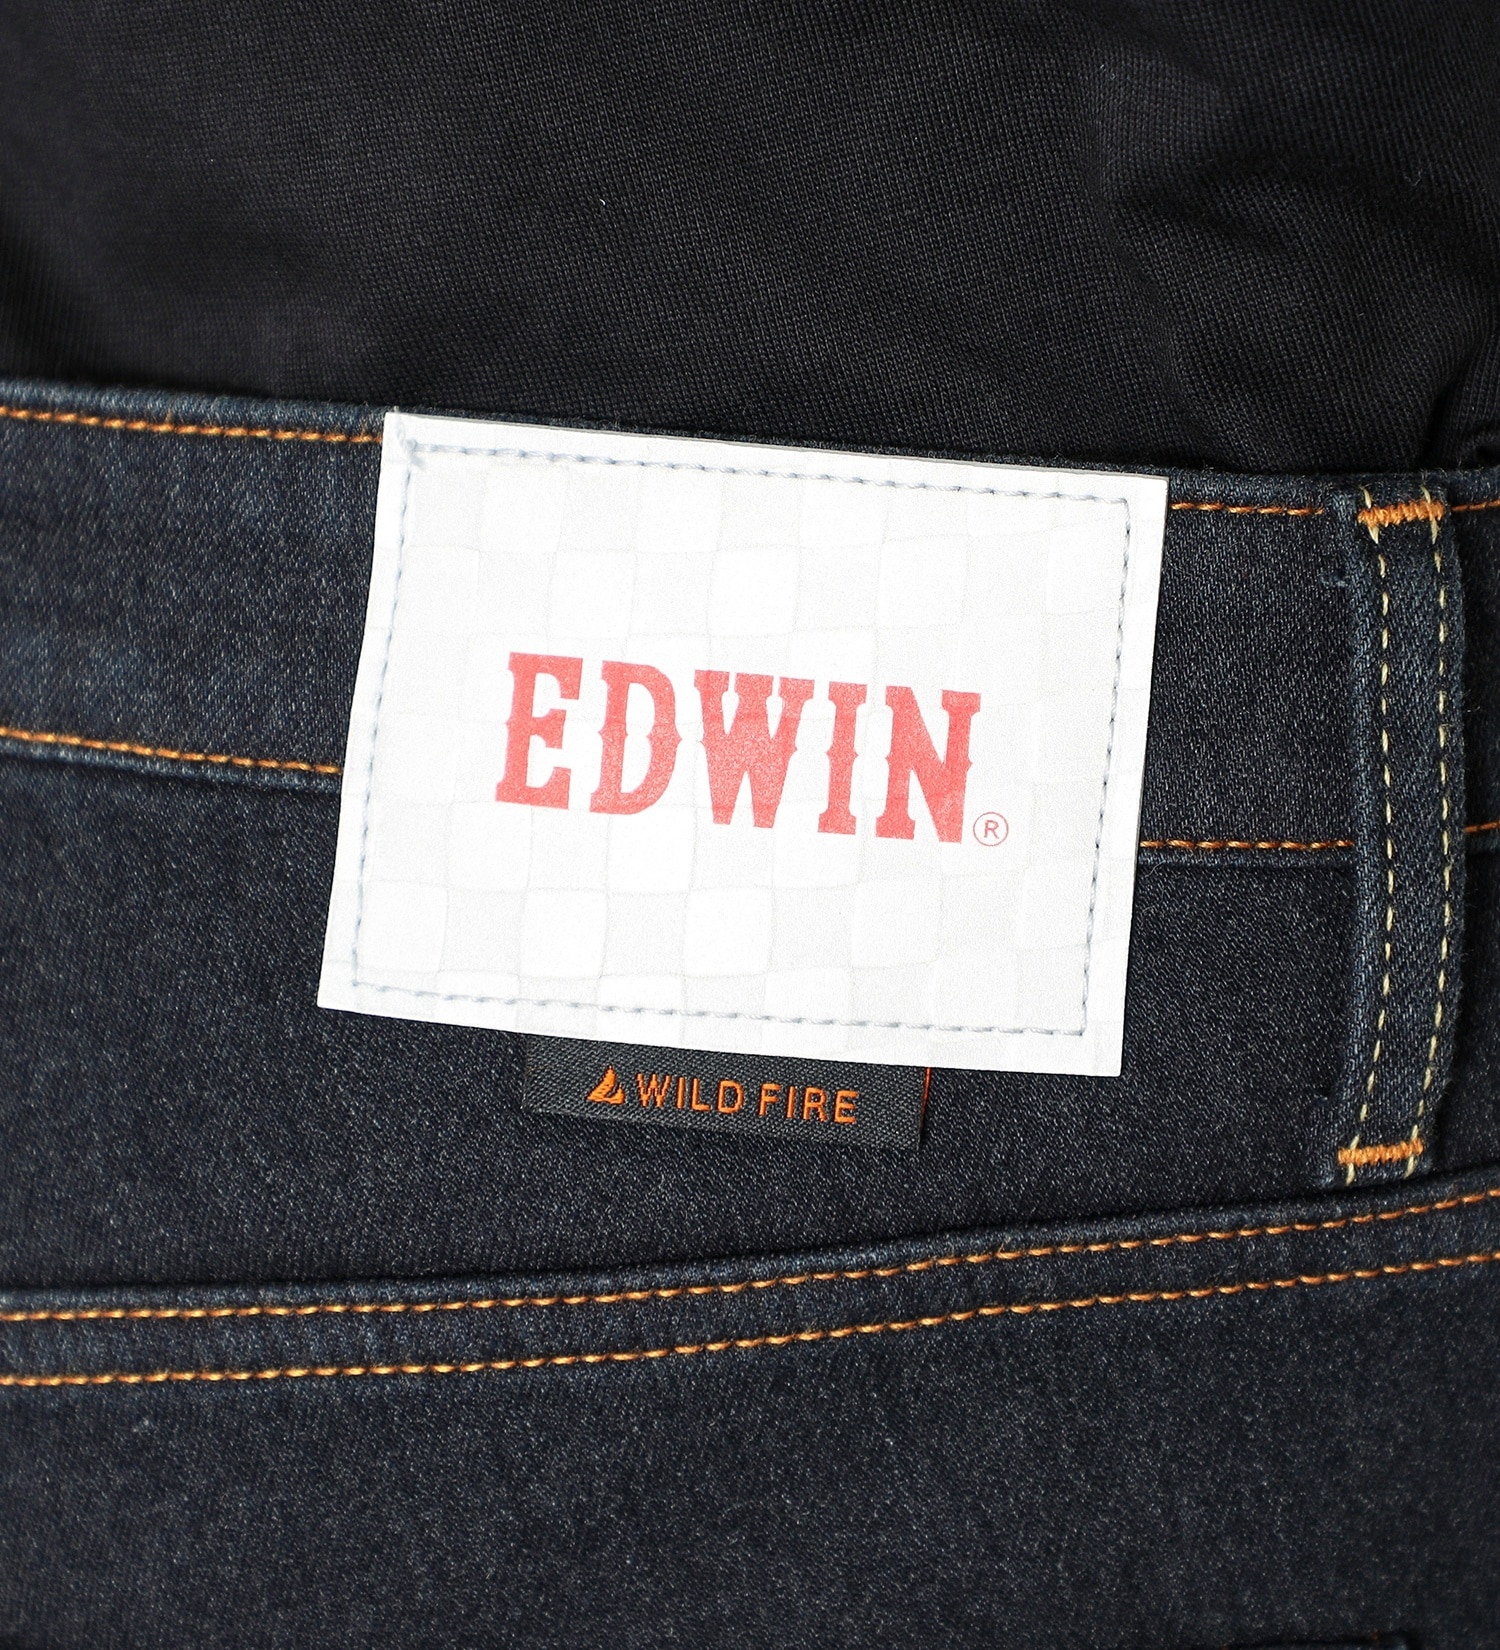 EDWIN(エドウイン)のバイク用 WILD FIRE ジーンズ[暖]|パンツ/デニムパンツ/メンズ|インディゴブルー